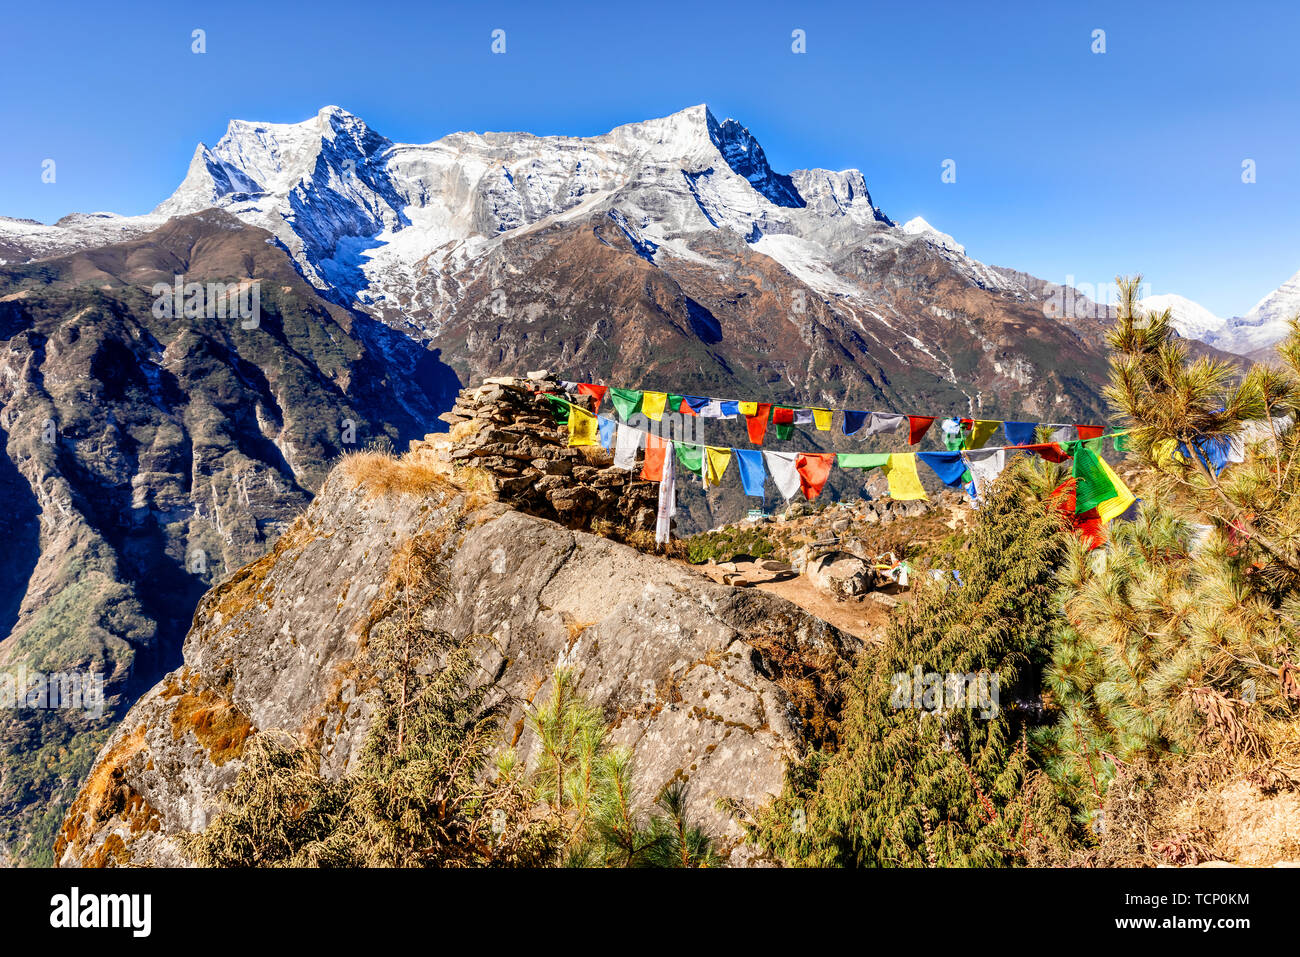 Au-dessus de Namche Bazar à la vue et de drapeaux à prières Damaraland Ri peak sur le trek à camp de base de l'Everest, la vallée de Khumbu, parc national de Sagarmatha (Népal) Banque D'Images